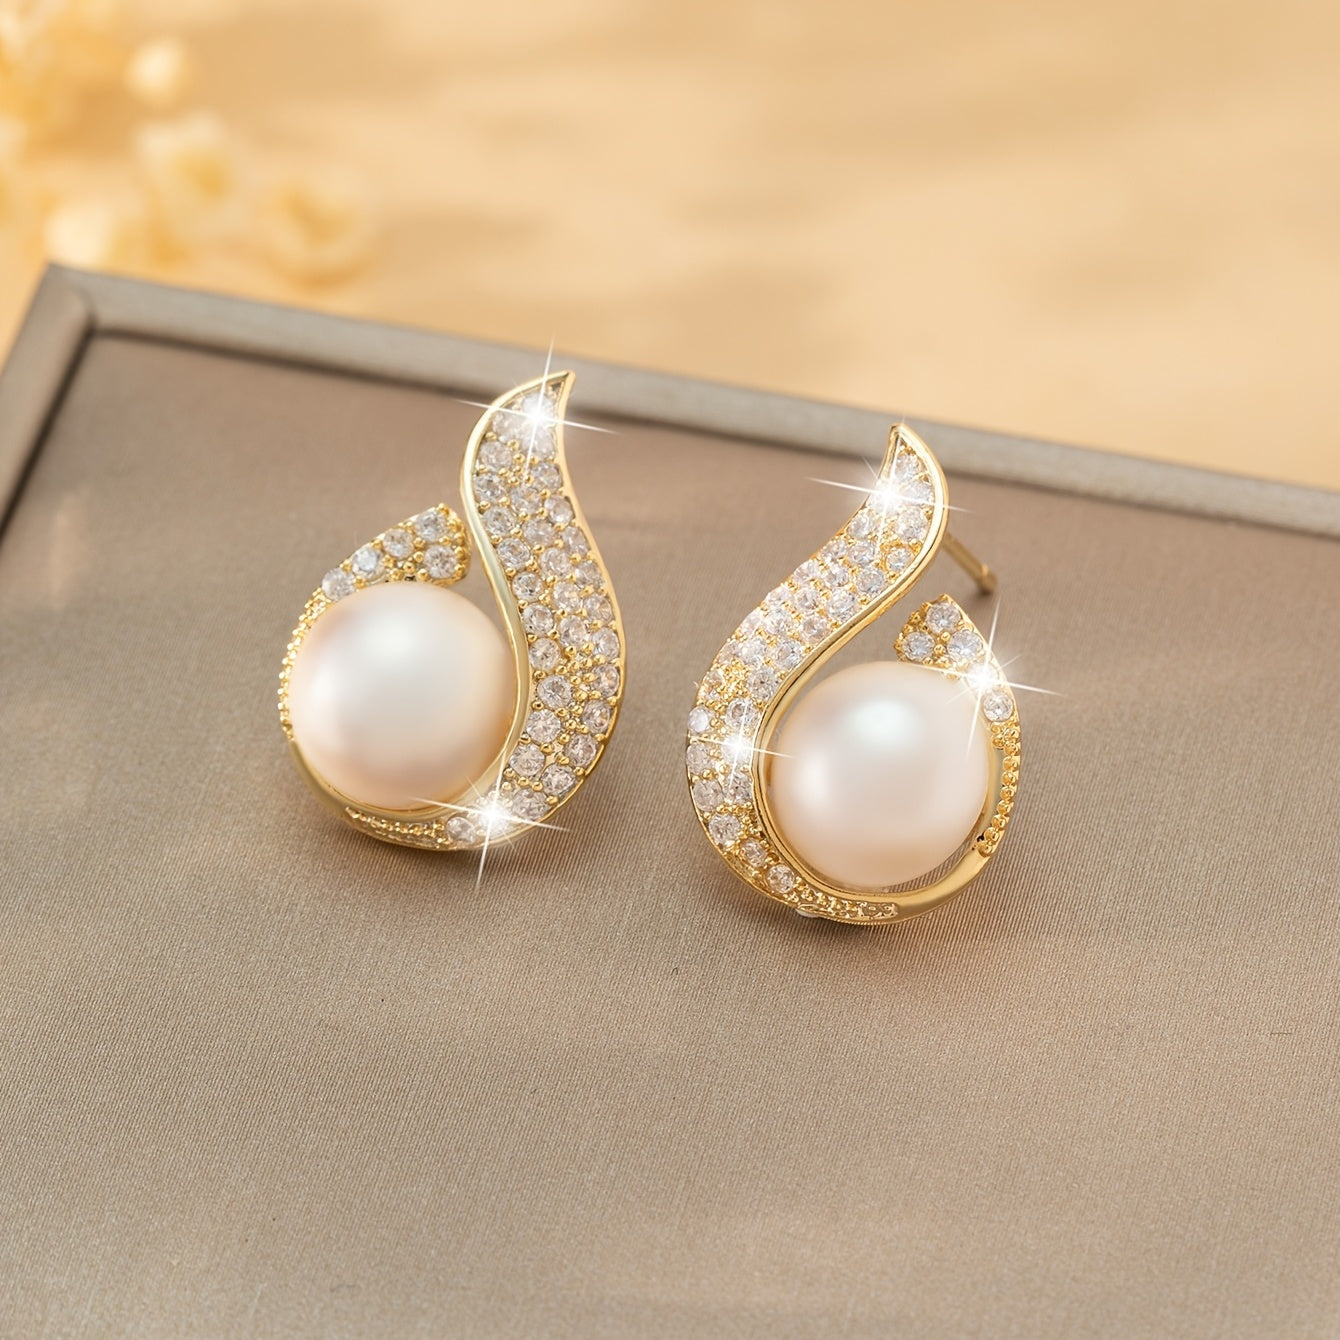 Tropfenförmige Zirkonia-Ohrstecker Mit Künstlichen Perlen Eleganter Schmuck Für Bankett